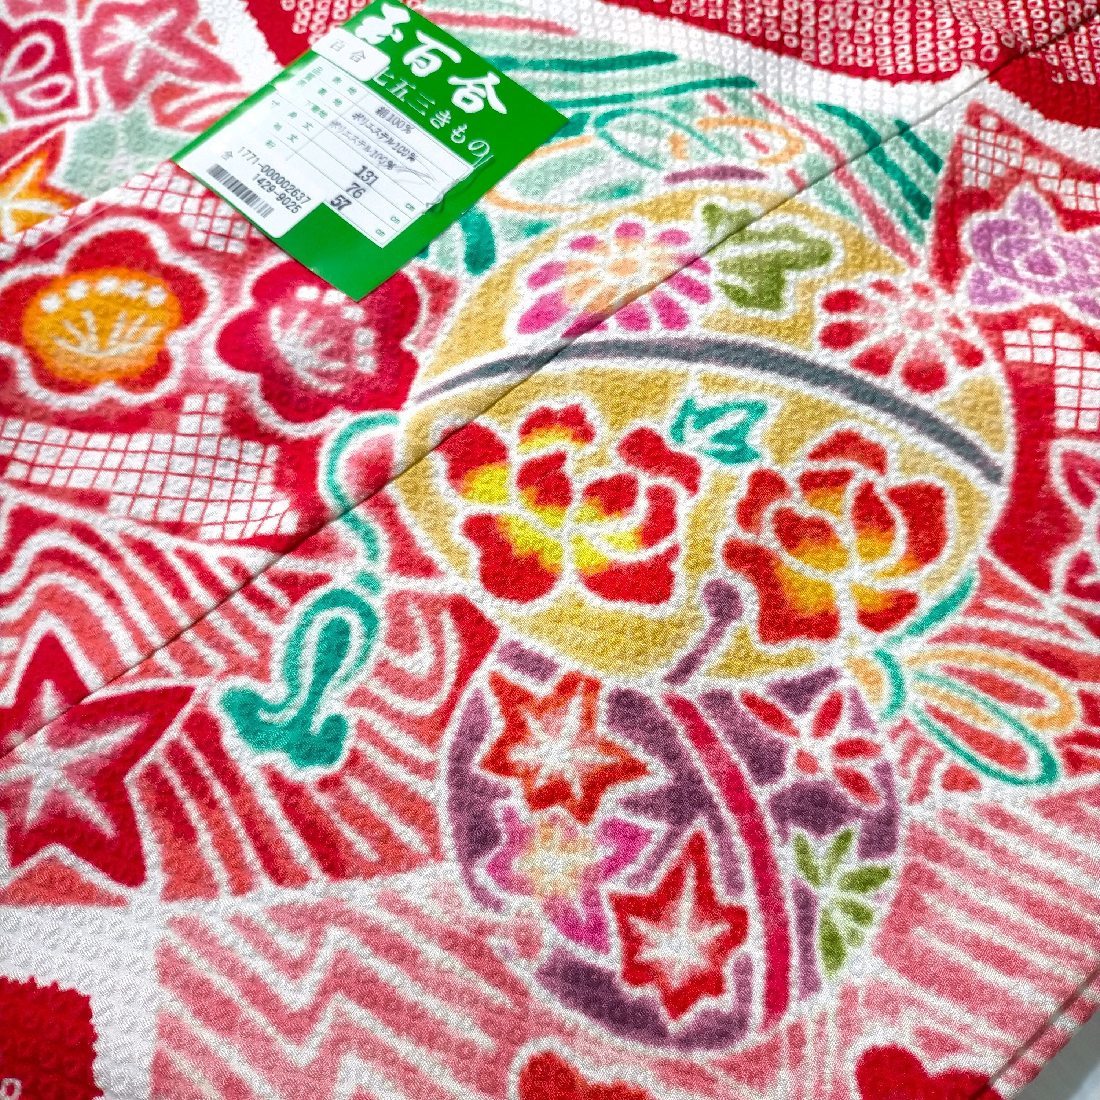  "Семь, пять, три" 753 кимоно k4131 7 лет натуральный шелк 4 .. кимоно ..(.....) диафрагмирования сделано в Японии новый товар включая доставку 